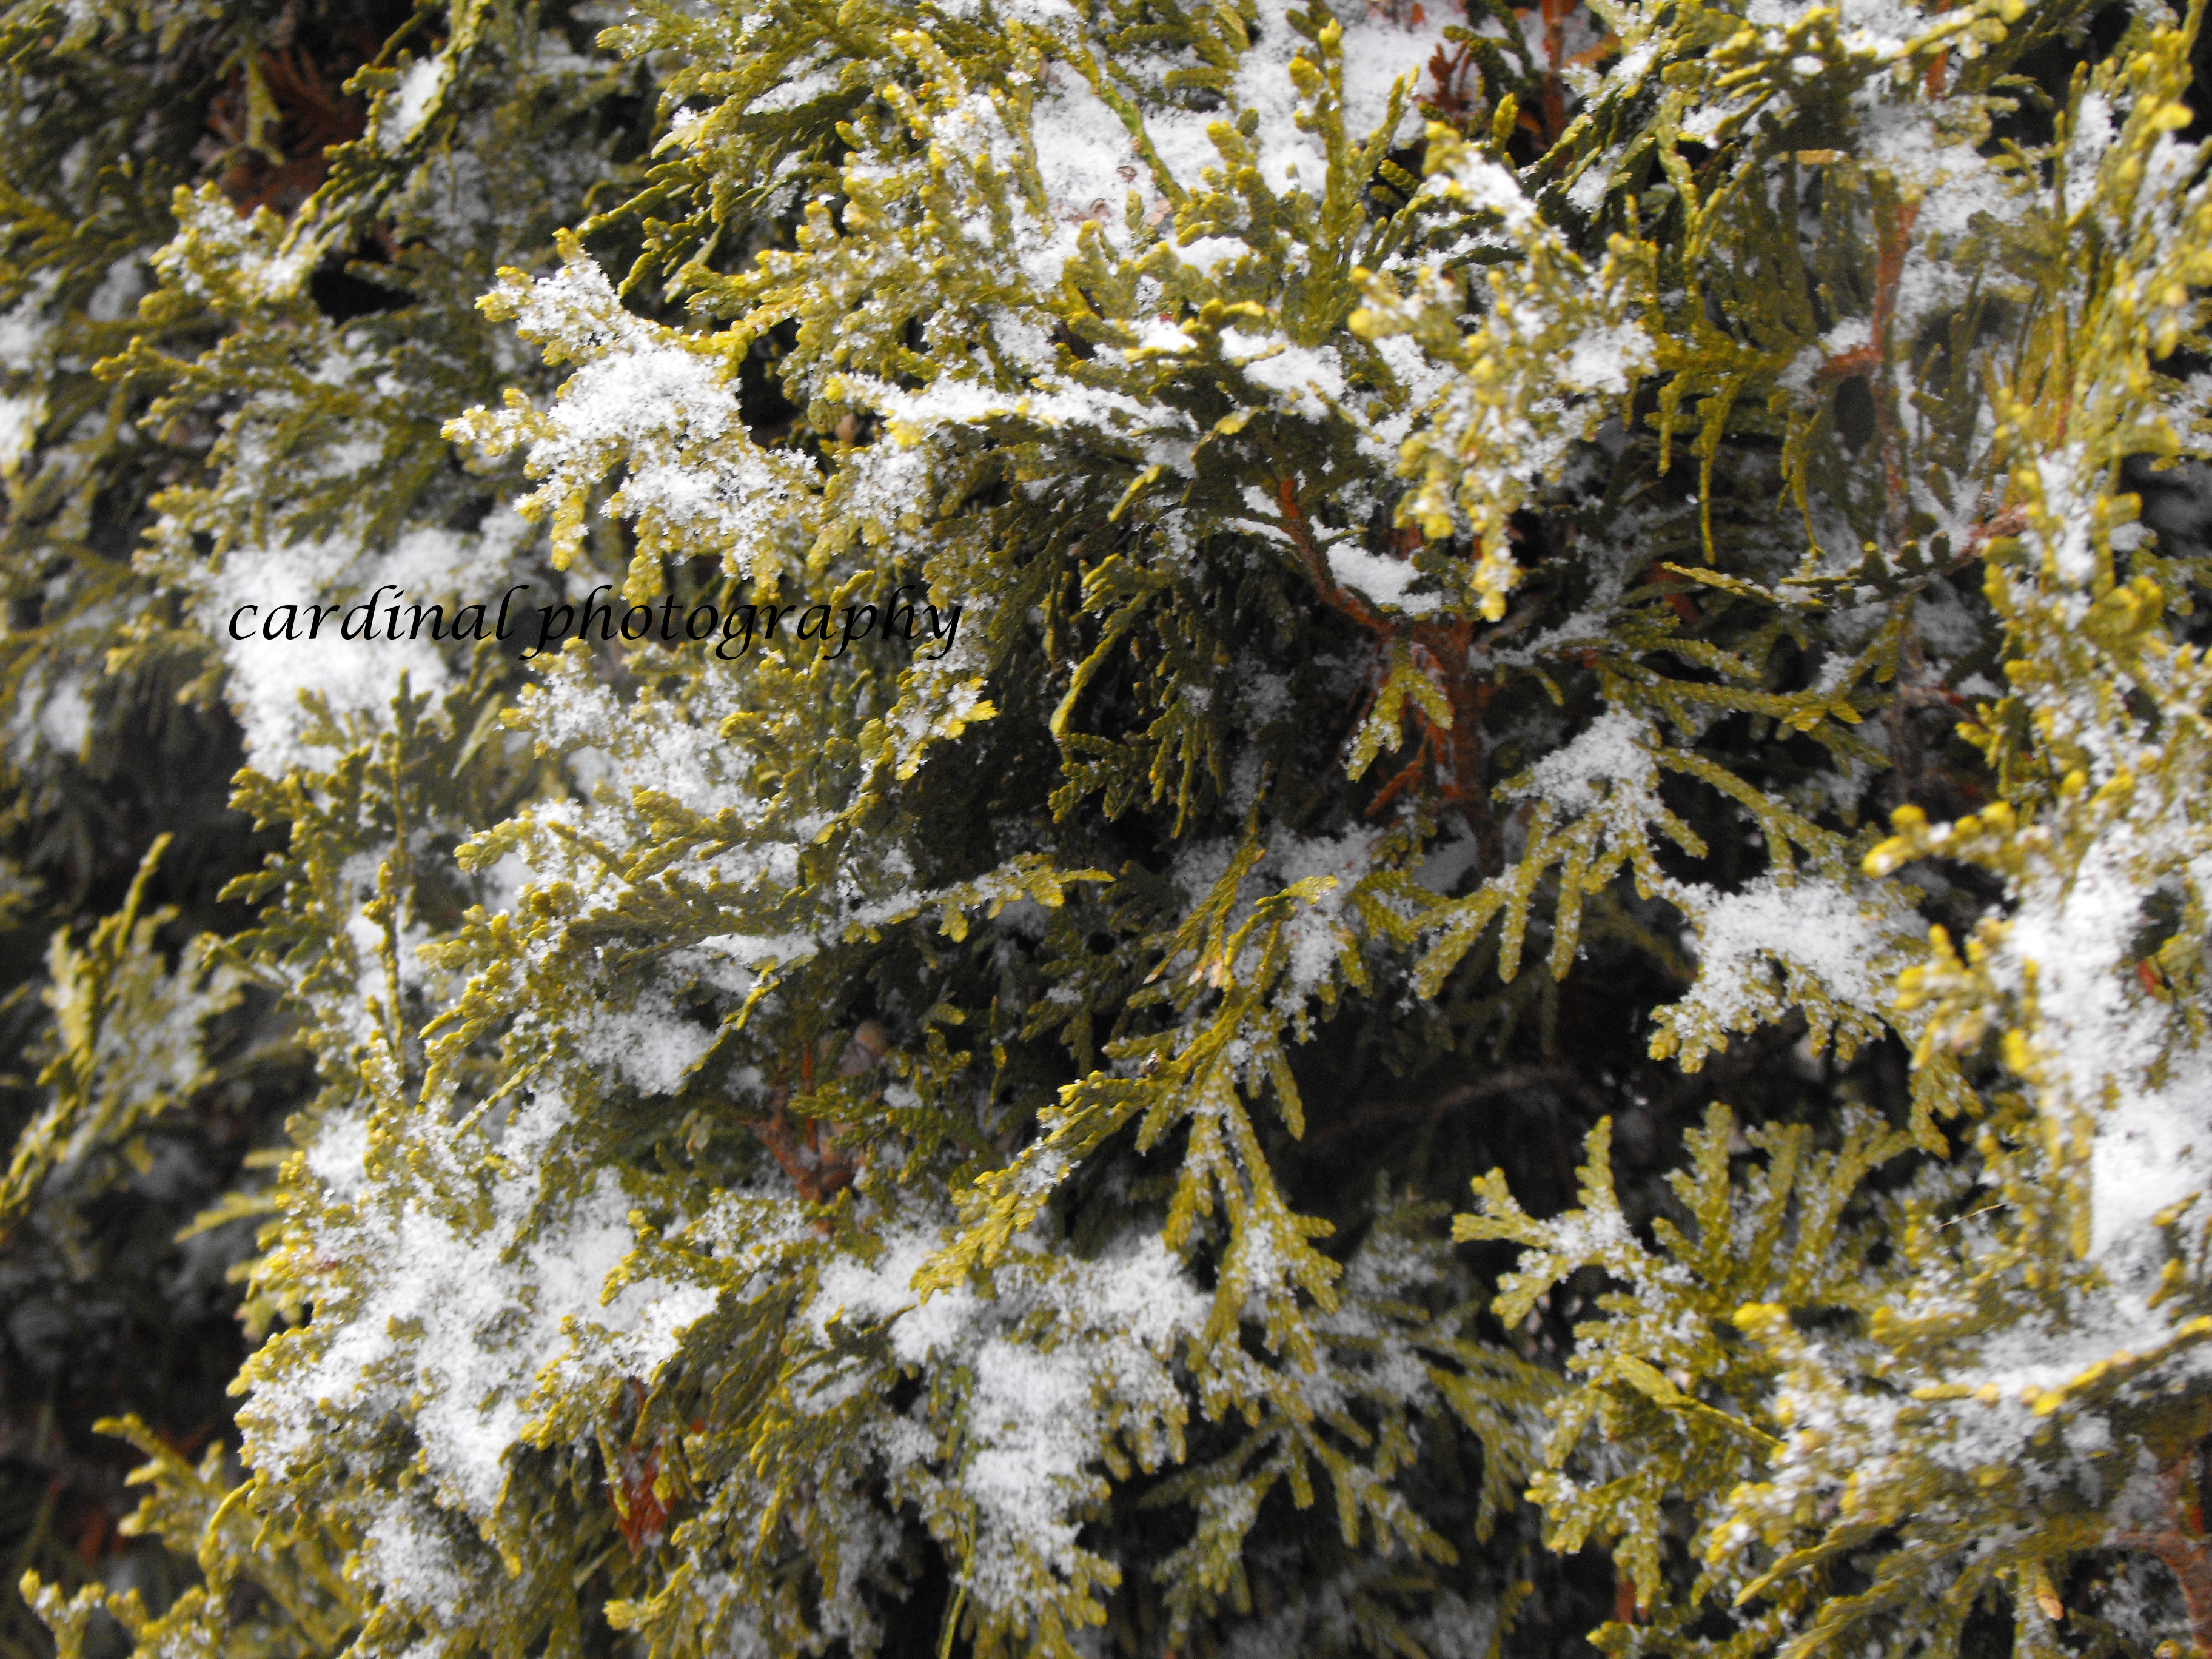 Snowy Pine Tree Close Up